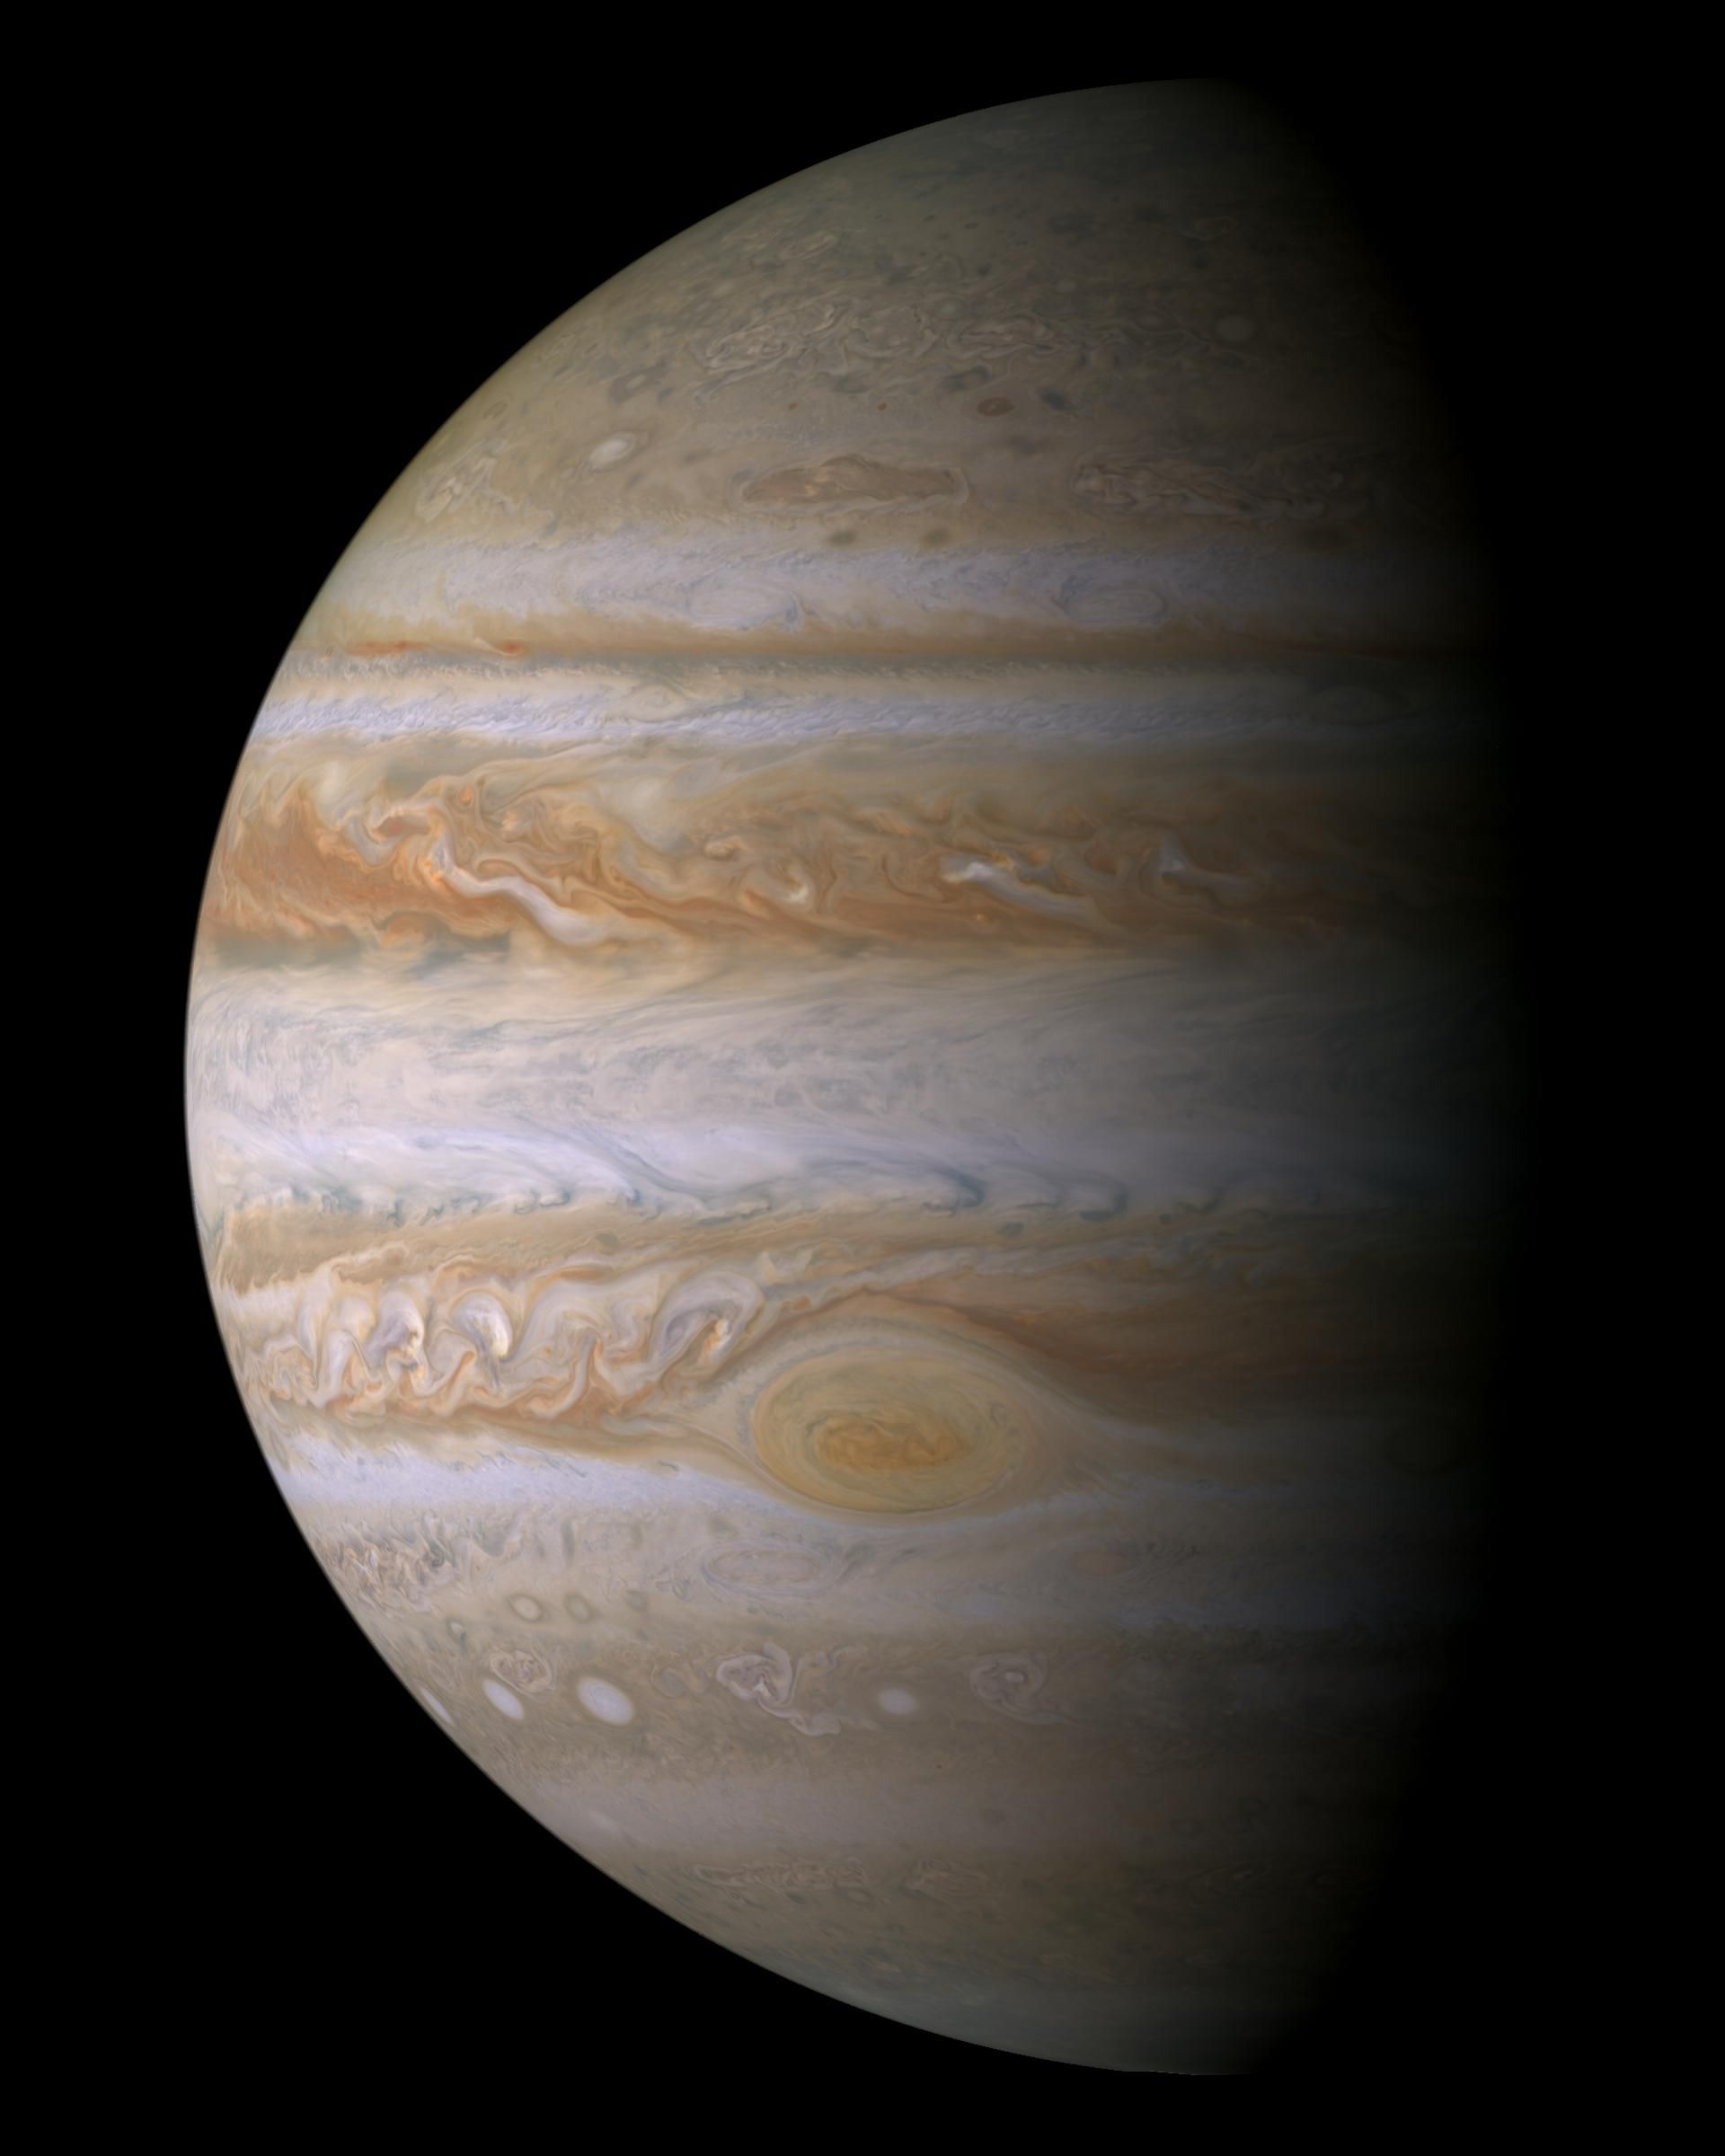 True color mosaic of Jupiter from Cassini